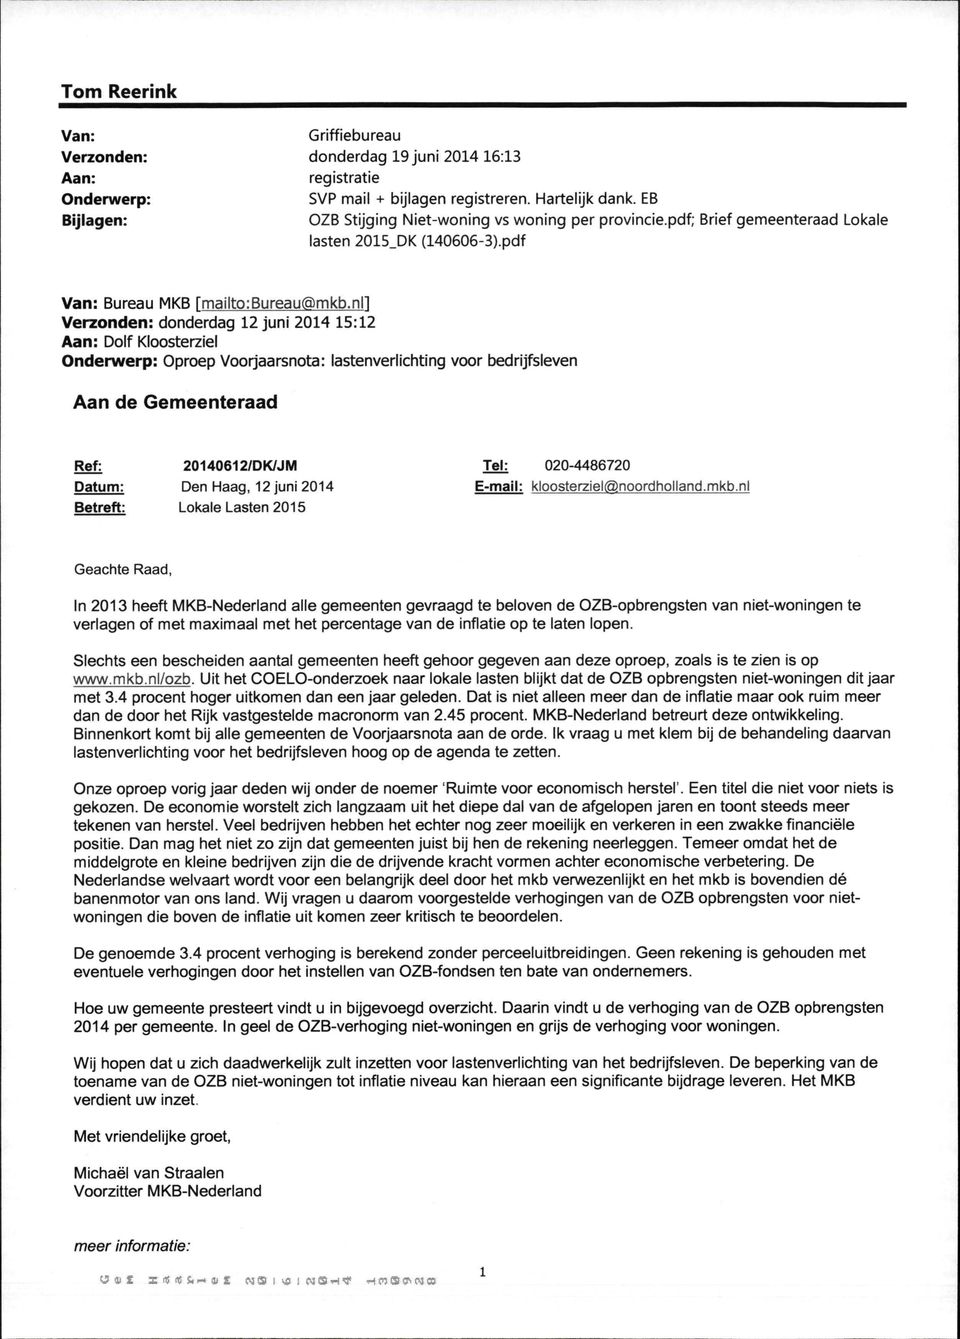 nl1 Verzonden: donderdag 12 juni 2014 15:12 Aan: Dolf Kloosterziel Onderwerp: Oproep Voorjaarsnota: lastenverlichting voor bedrijfsleven Aan de Gemeenteraad Ref: 20140612/DK/JM Tel: 020-4486720